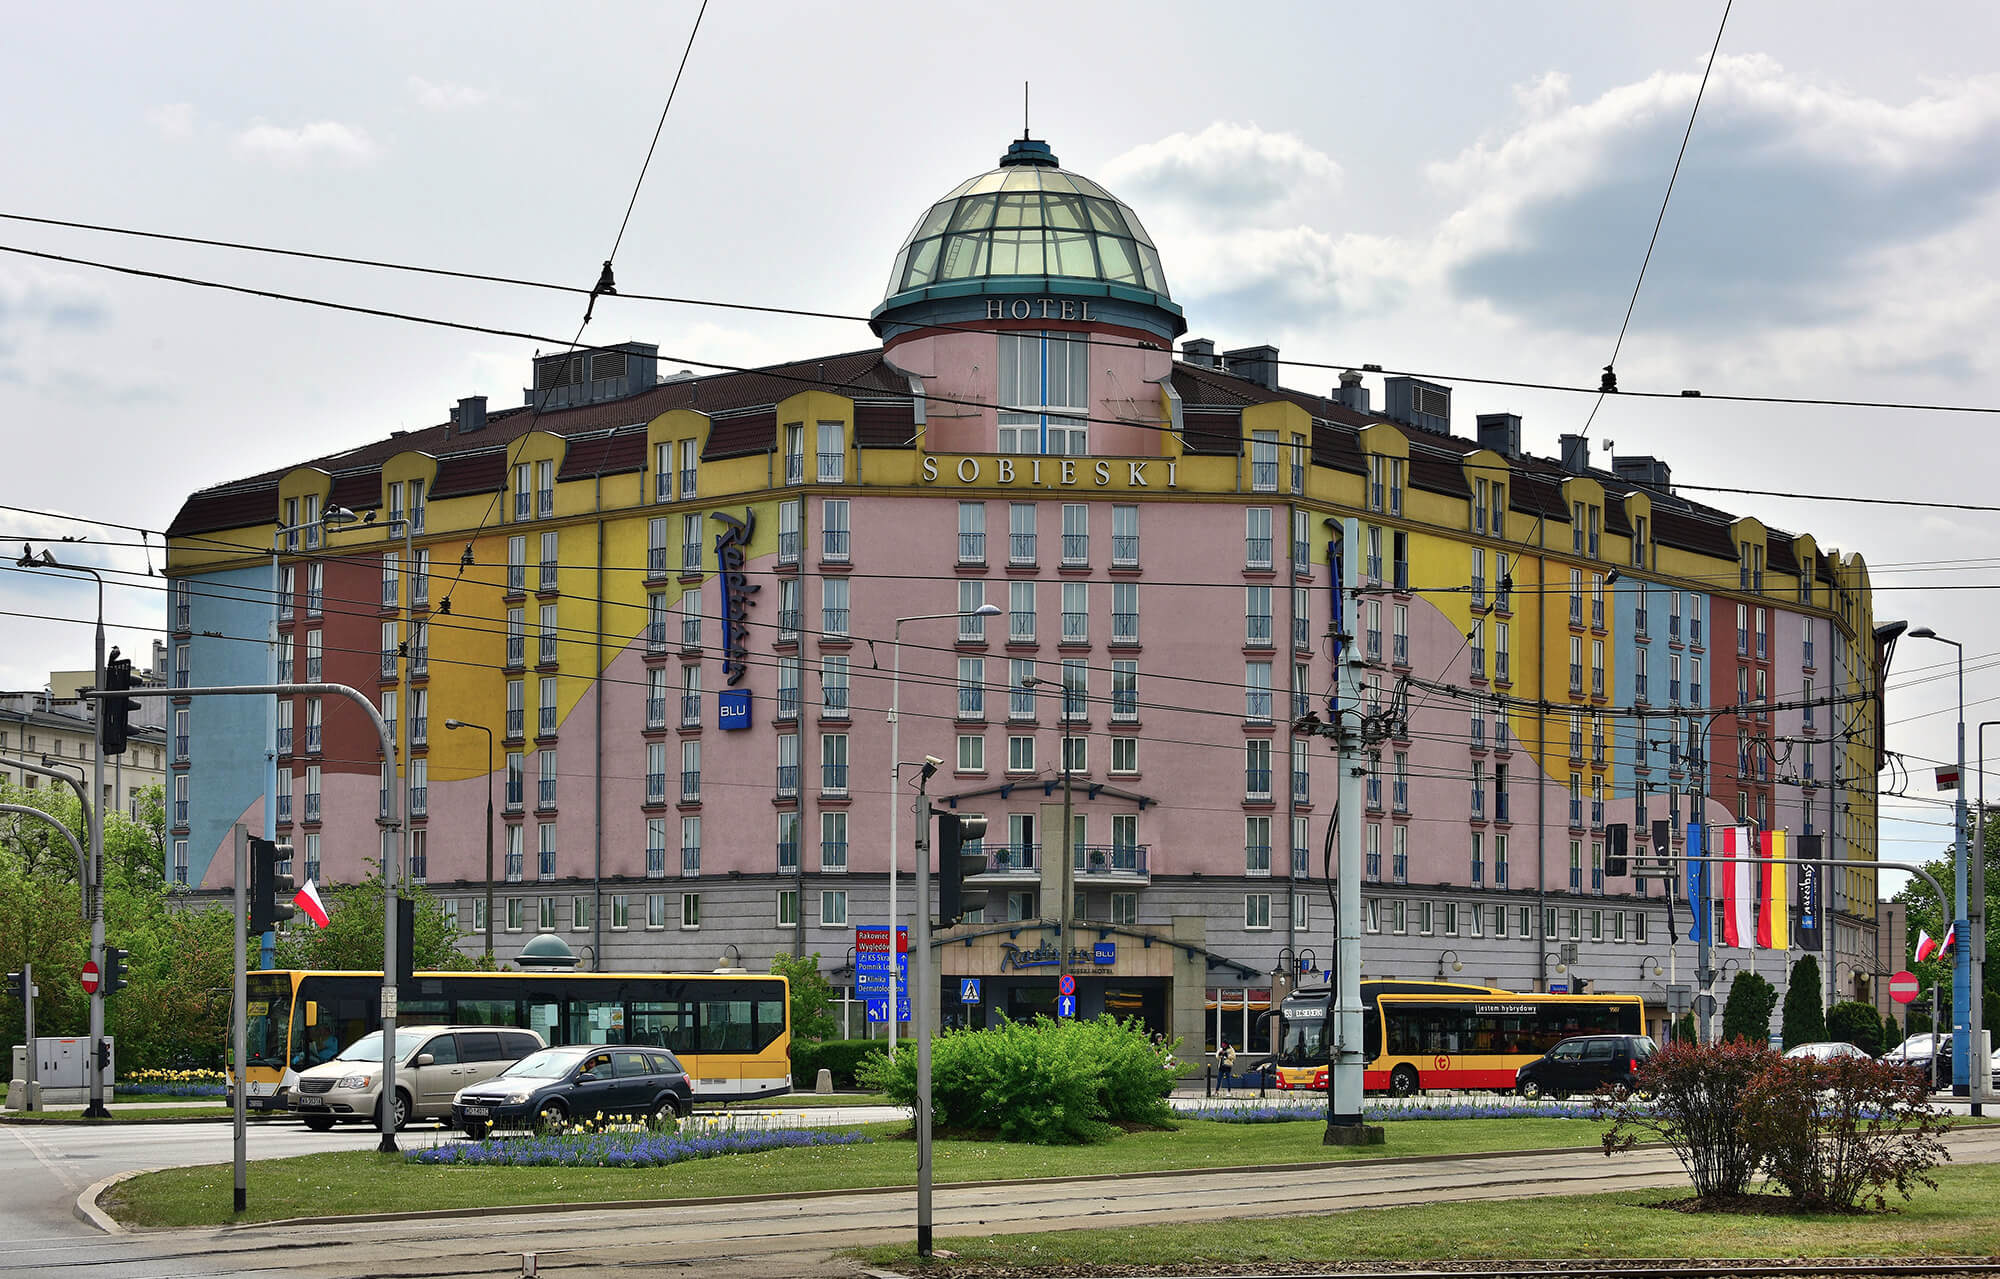 Radisson_Blu_Sobieski_Hotel_plac_Zawiszy_2019_urody_evropy_kondratieva